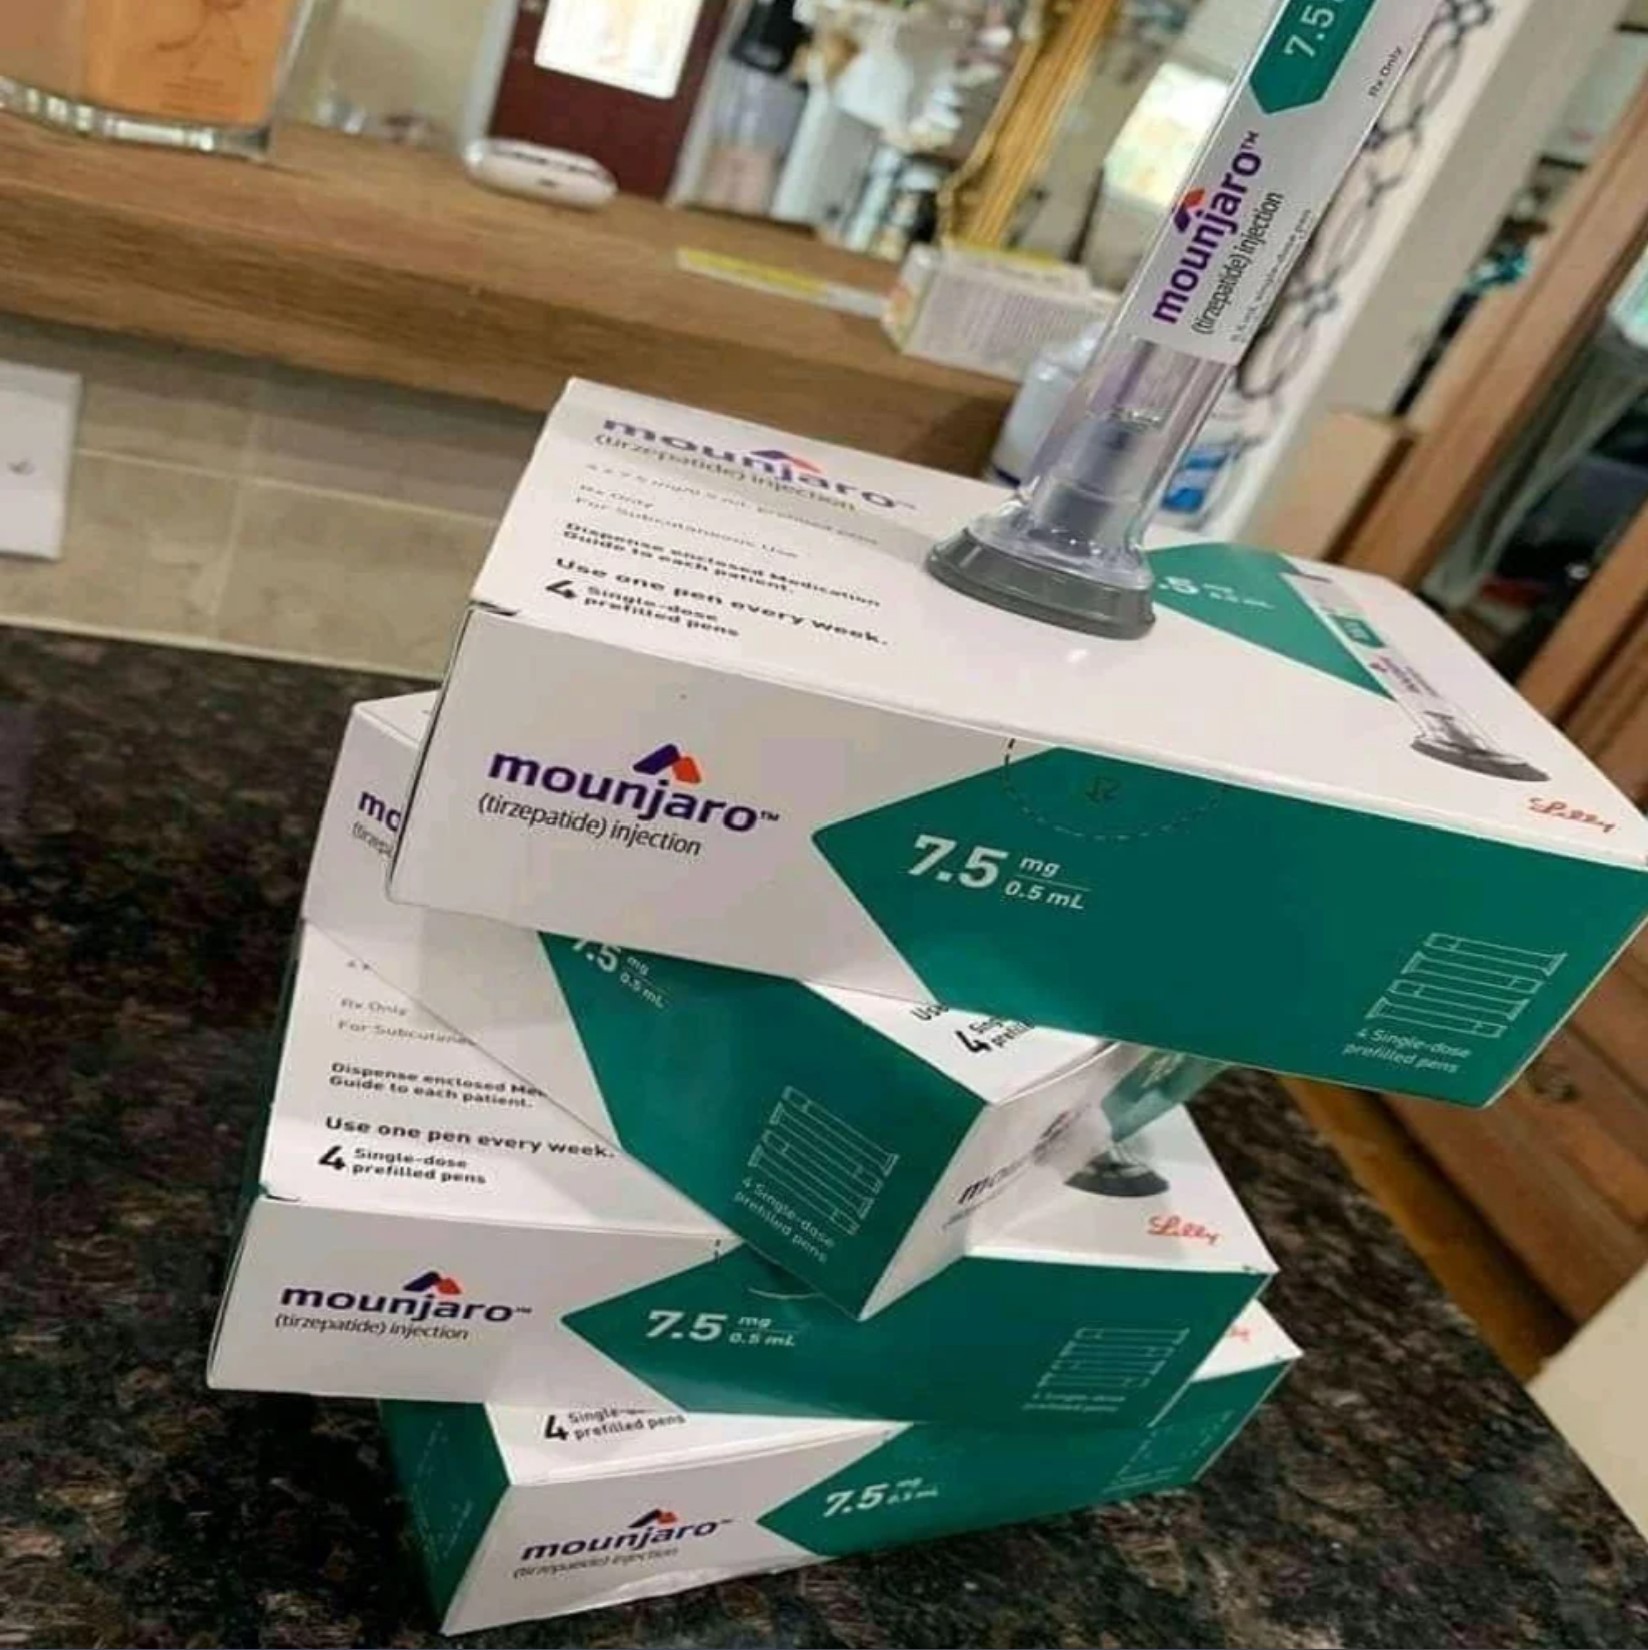 whatsapp +971 55 385 3946 --   Mounjaro injection  for sale online in  Oman, Jordan, Kuwait